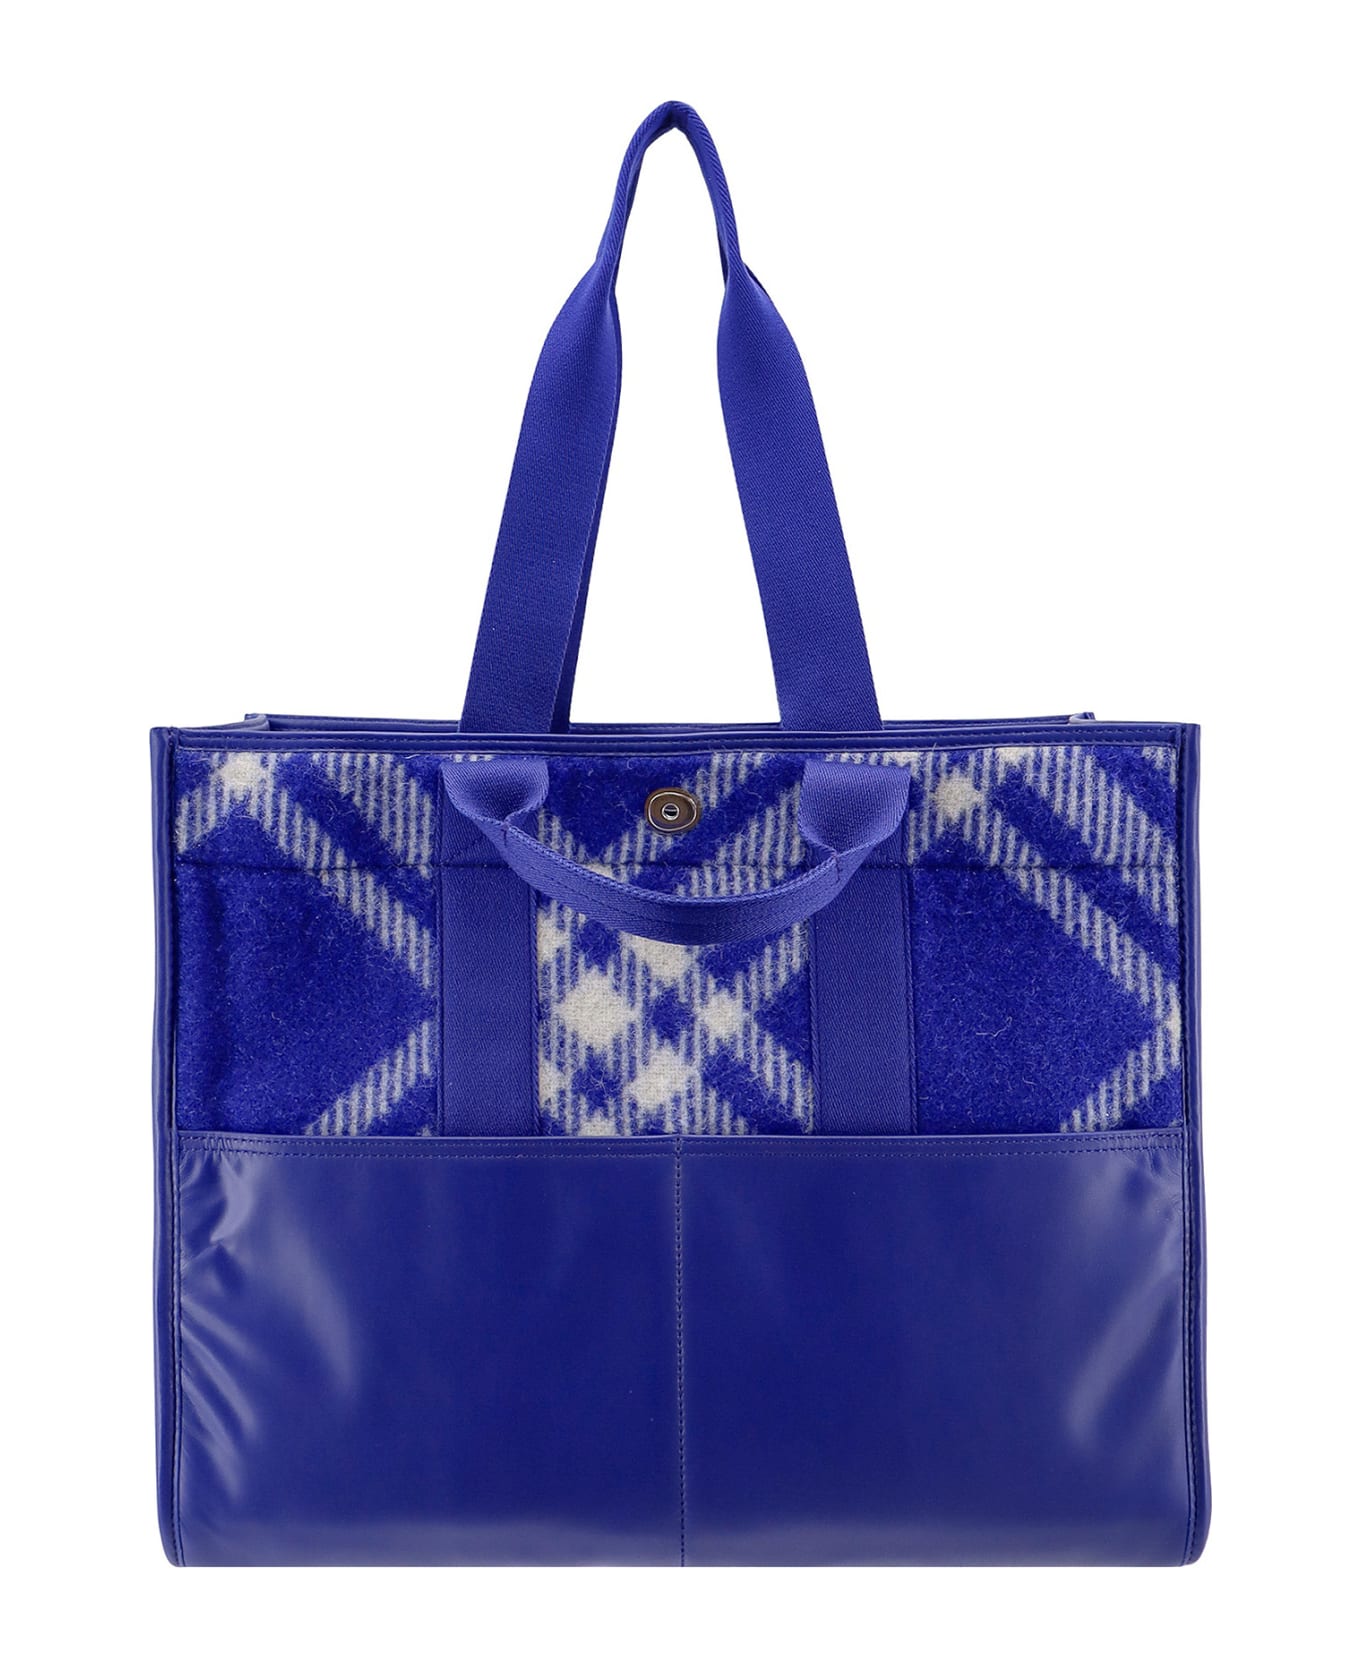 Burberry Shopper Tote Handbag - Blue